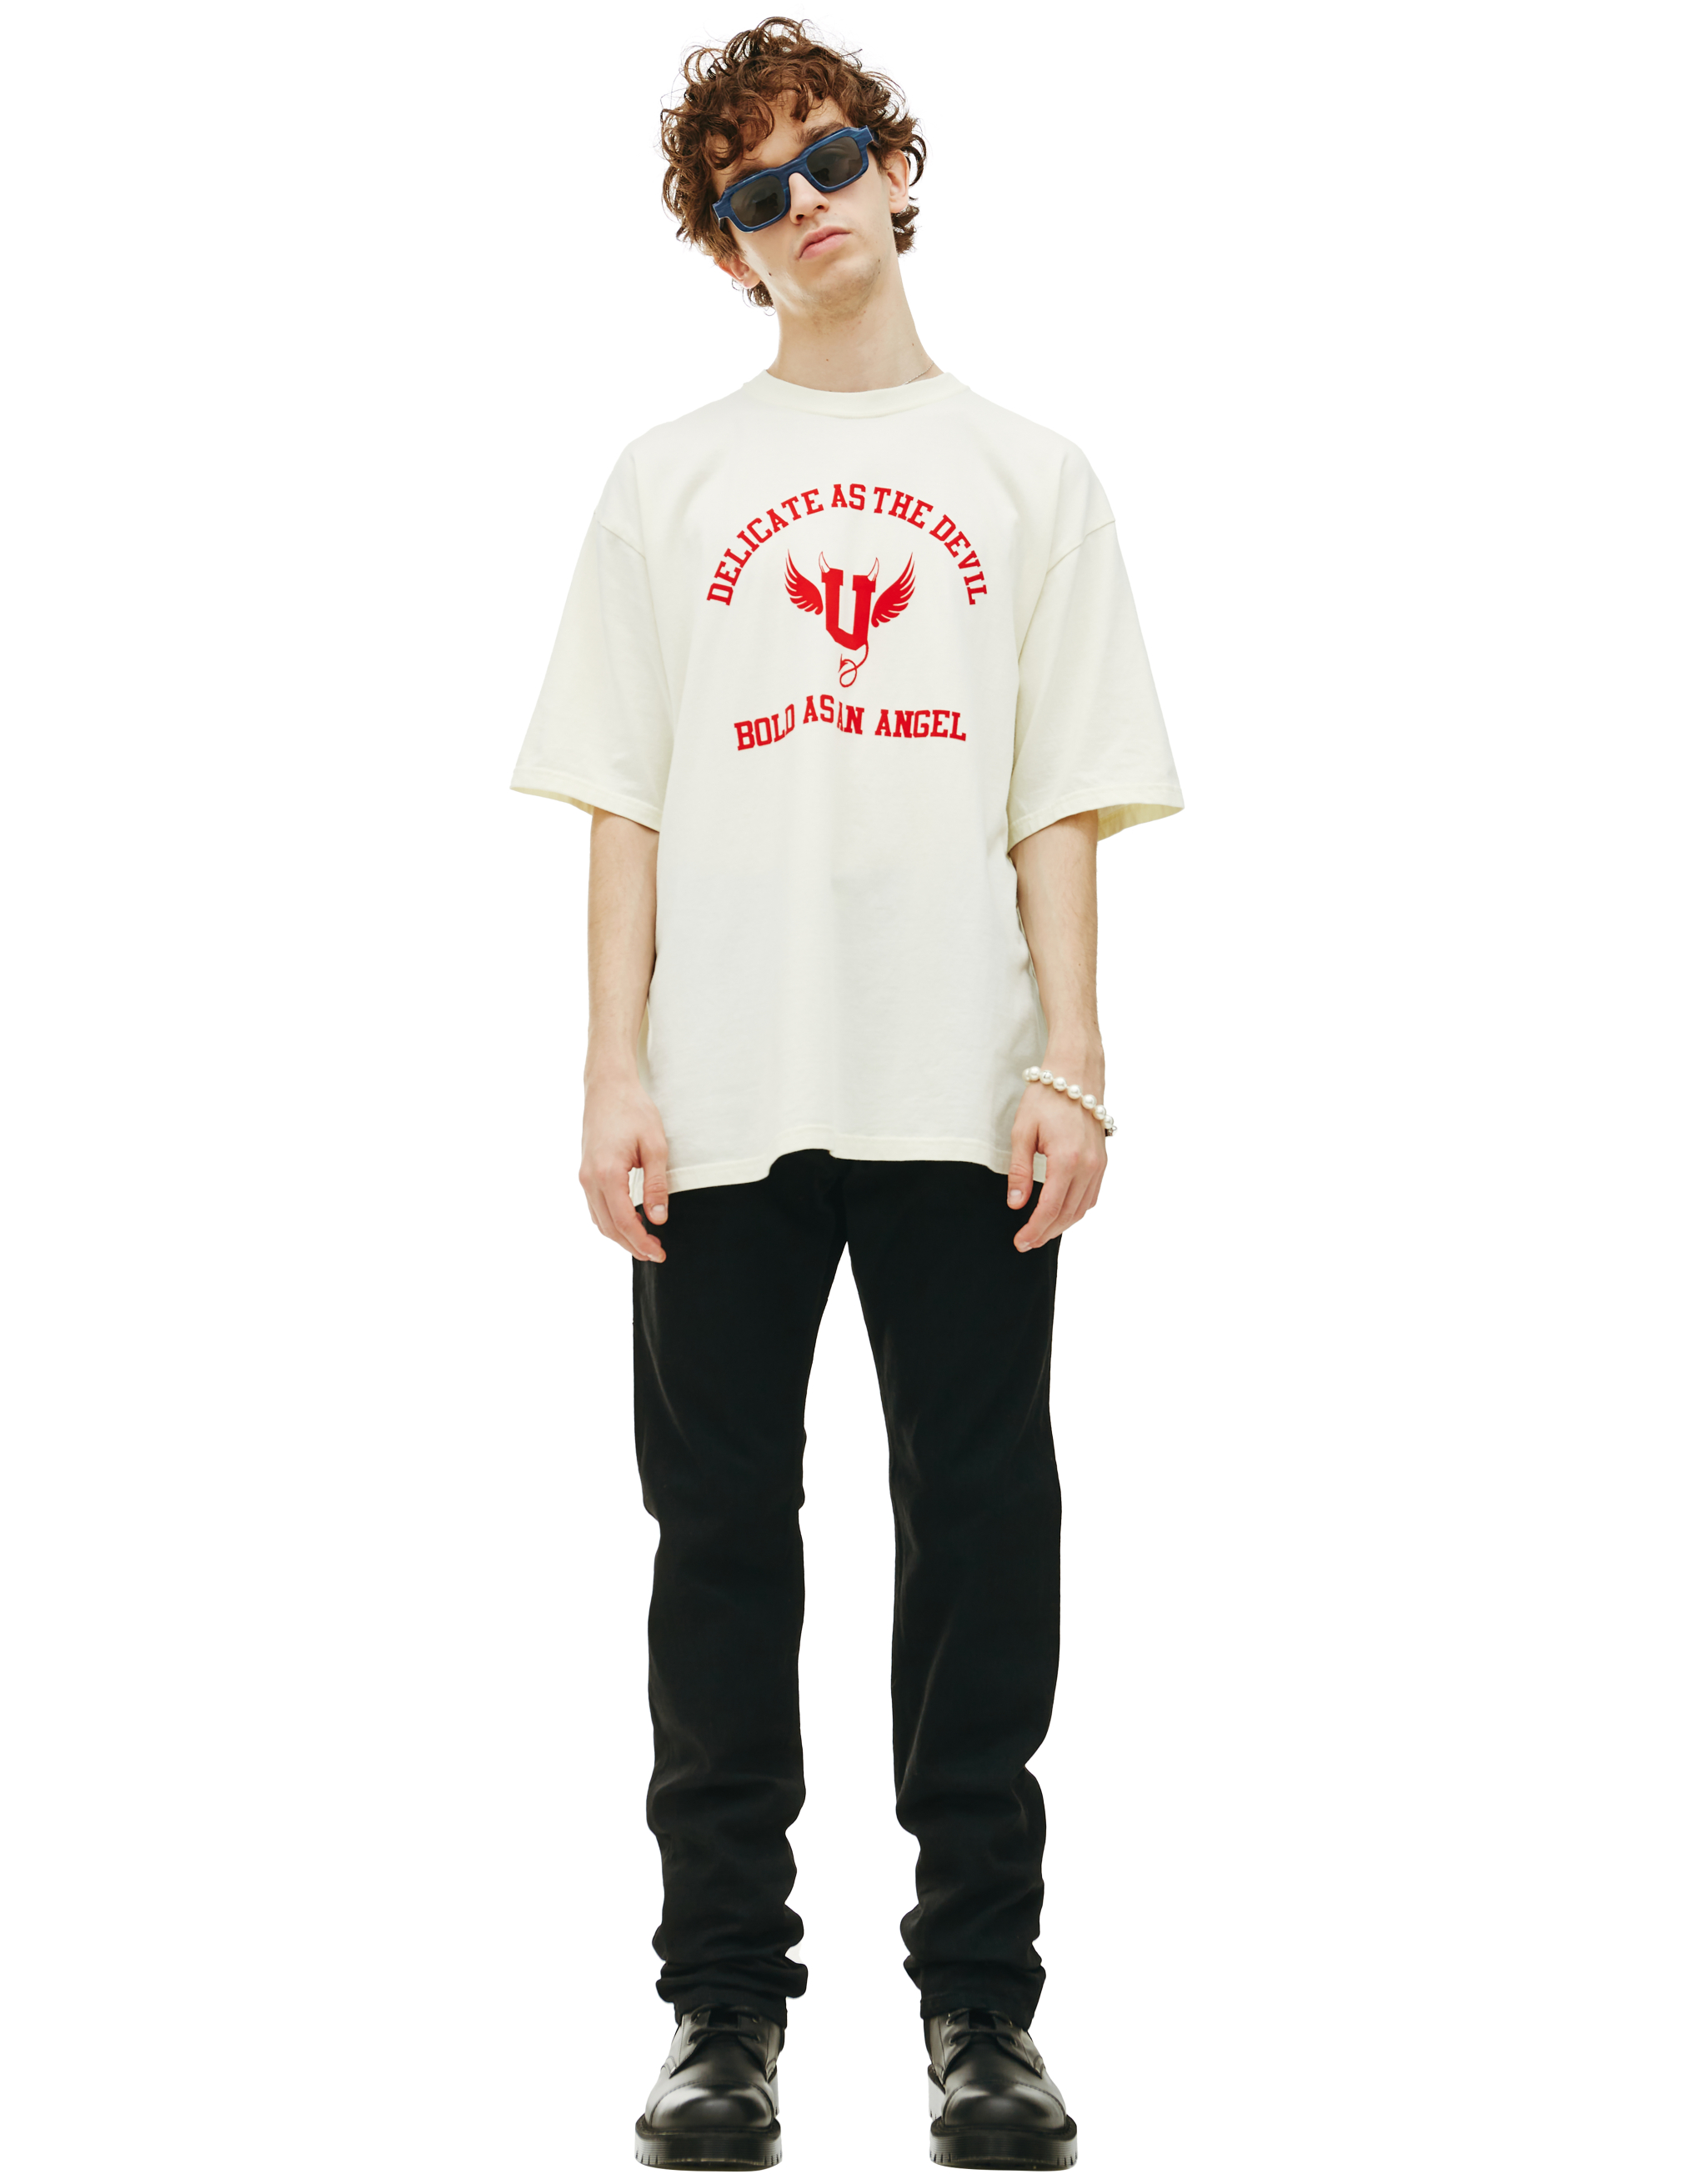 Хлопковая футболка с принтом Undercover UC2B3803, размер 5;4